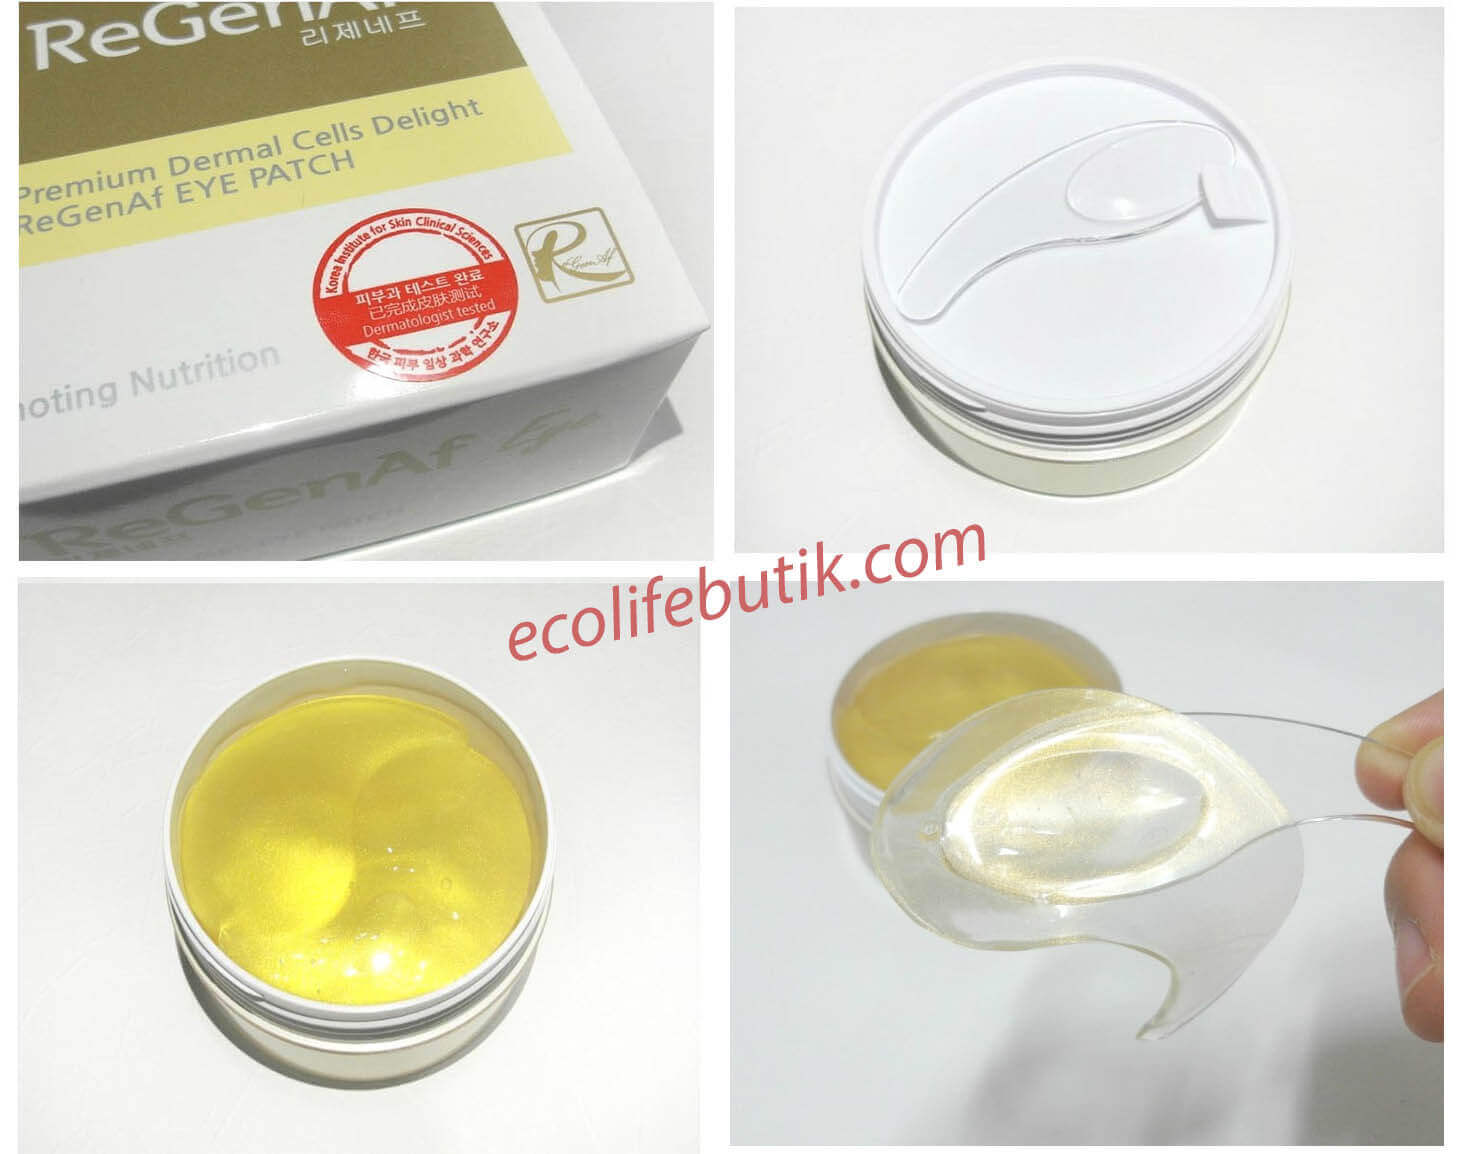 Гидрогелевые патчи c золотом и EGF ReGenAf Gold & EGF Premium Hydro-Gel Eye Patch, 60 шт